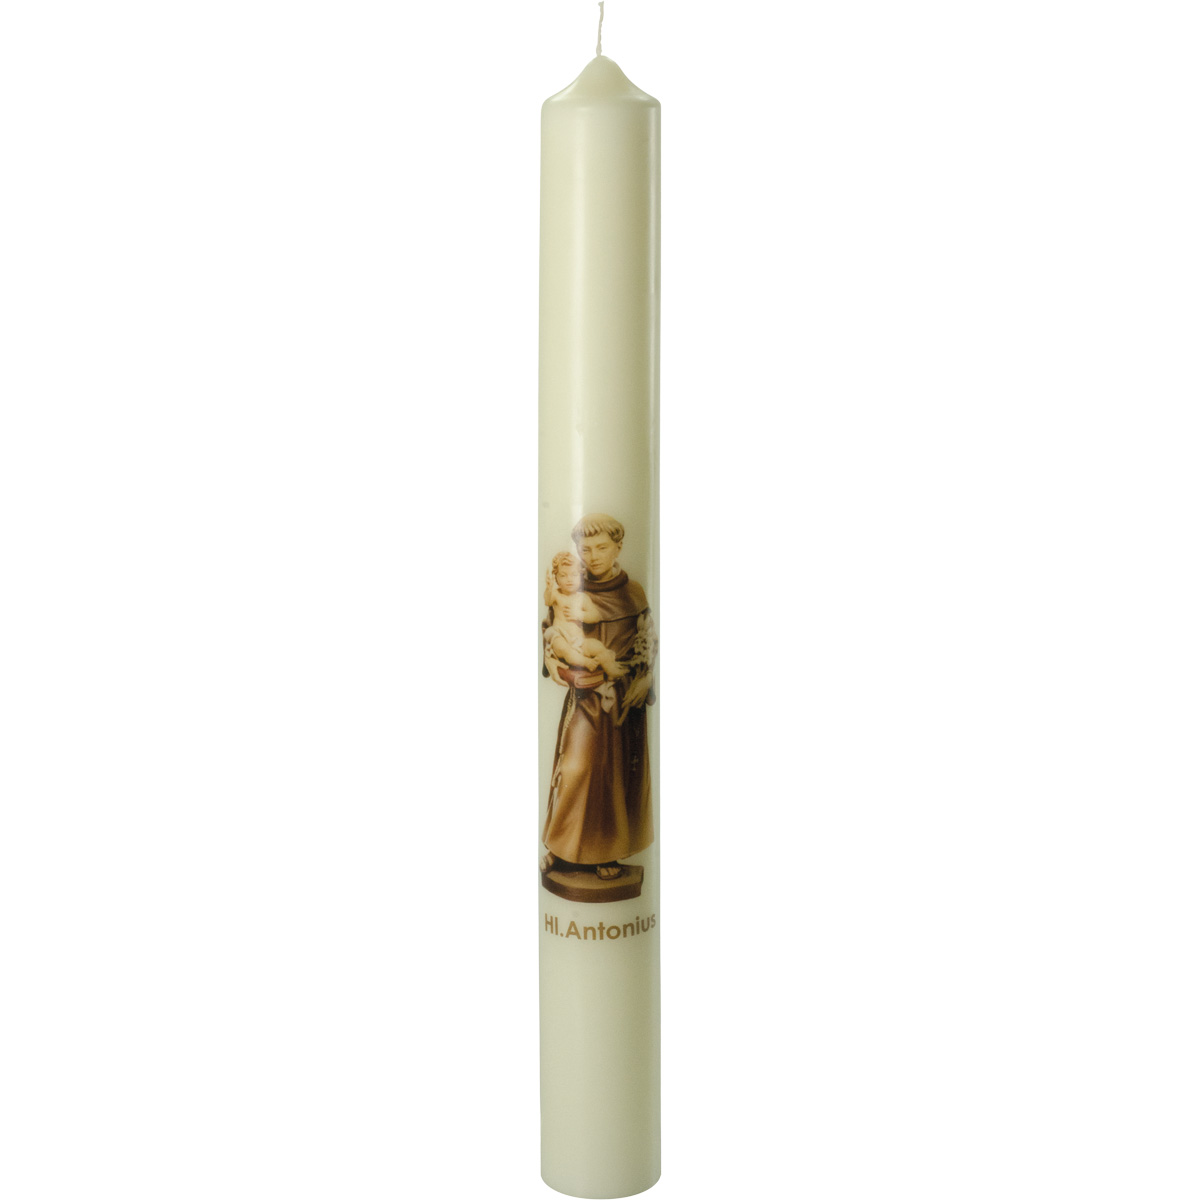 Heiliger Antonius Kerze, #2661, 600x60